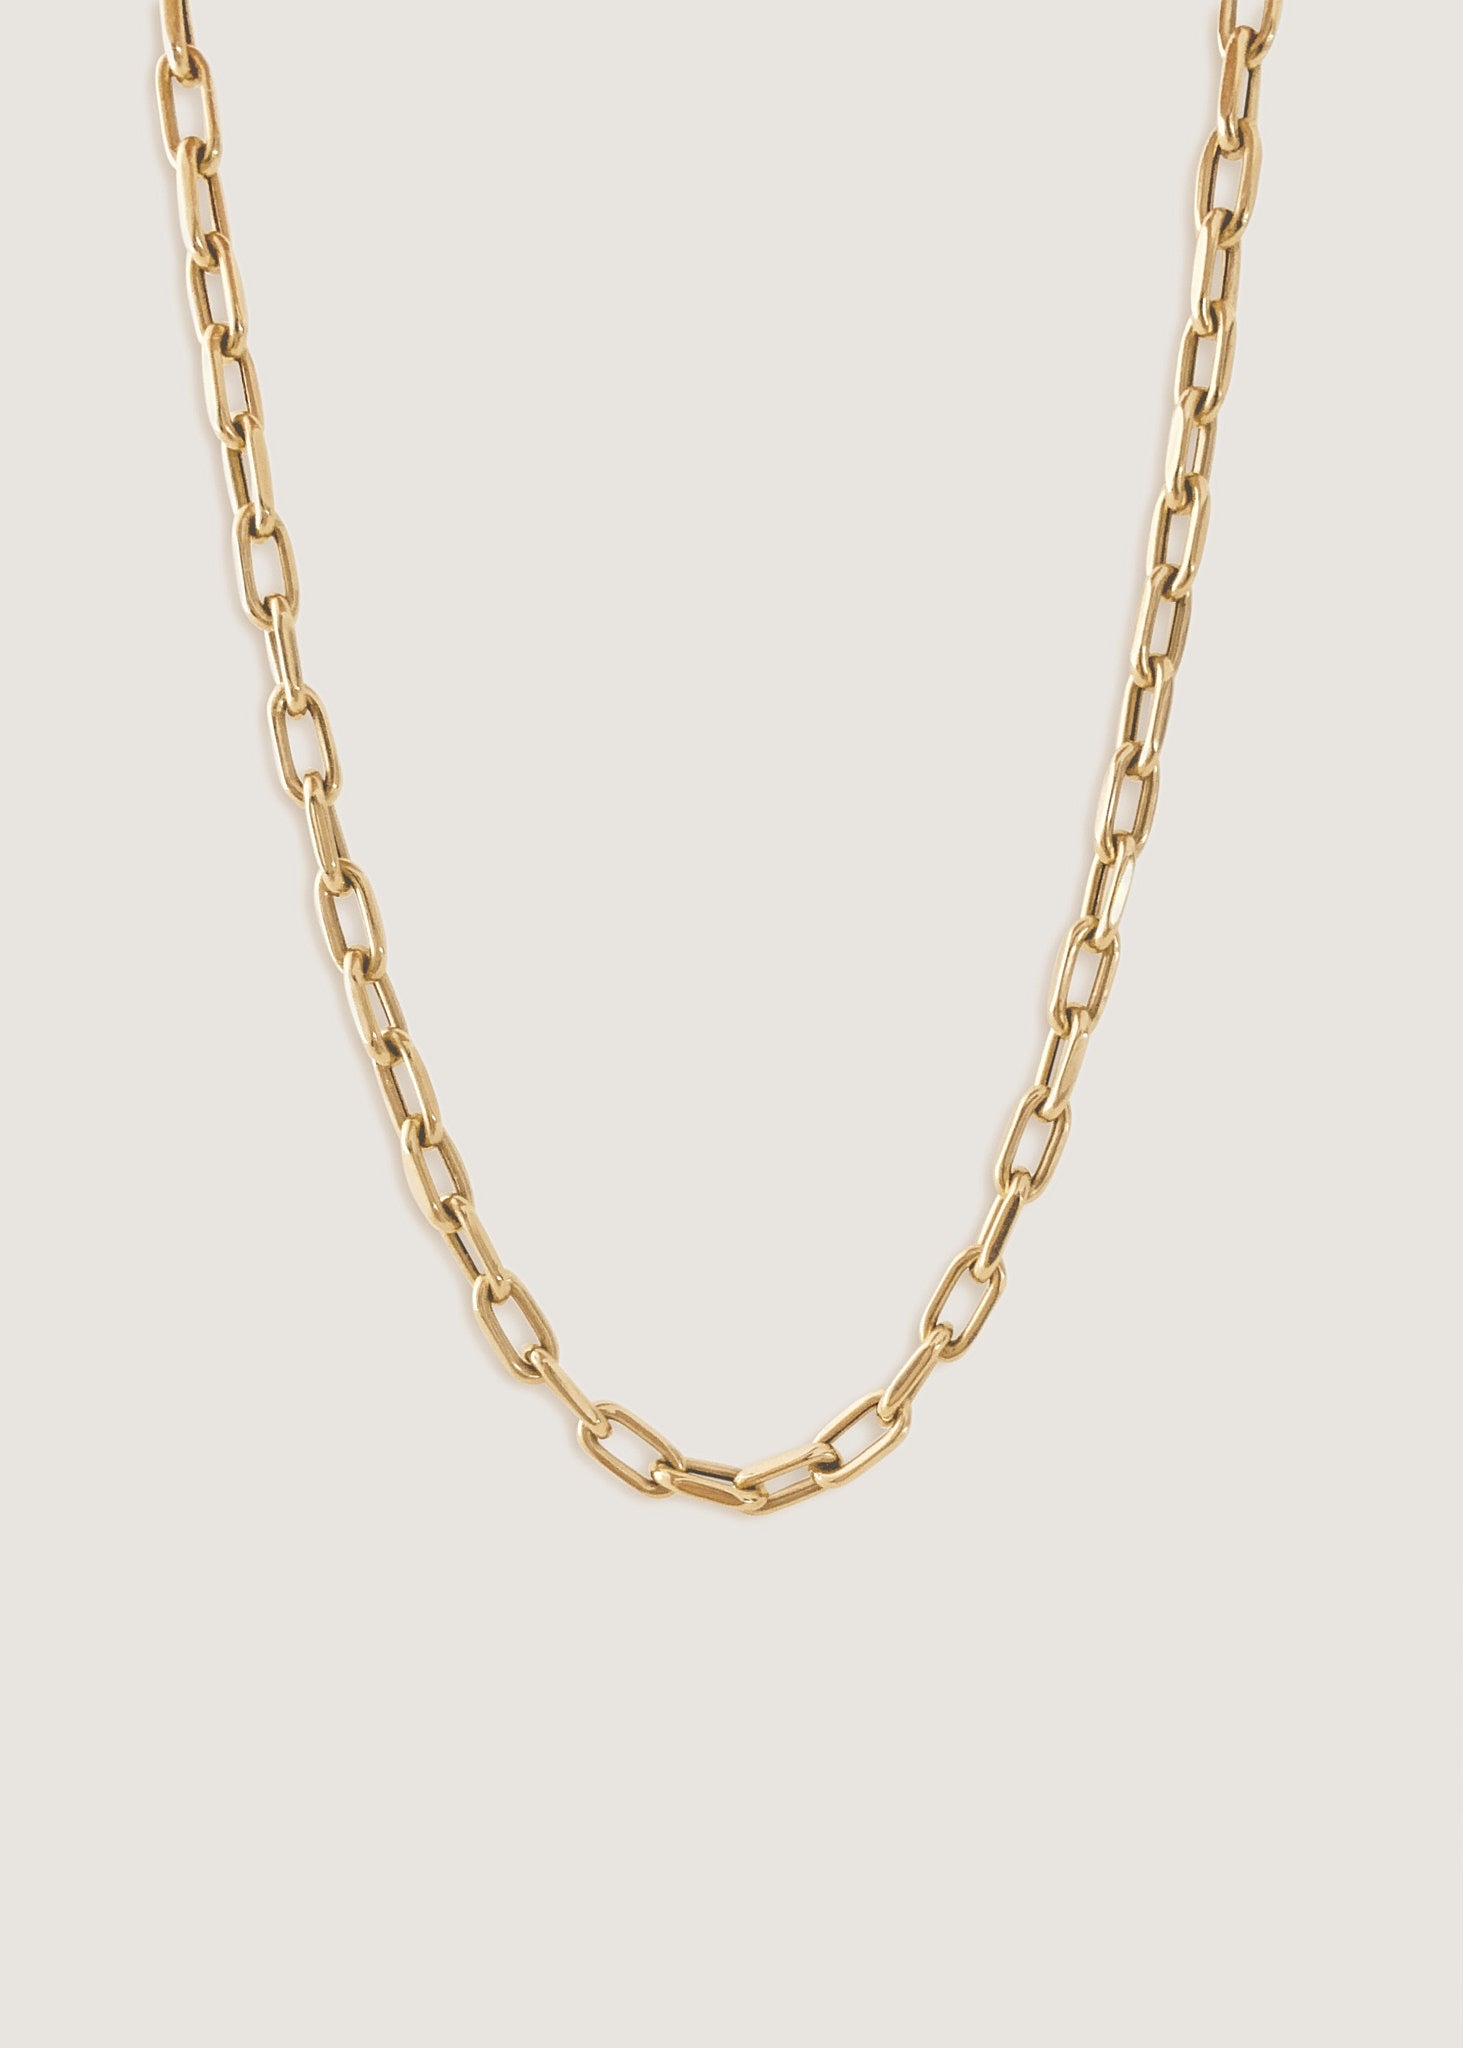 alt="Mini Link Chain Necklace"